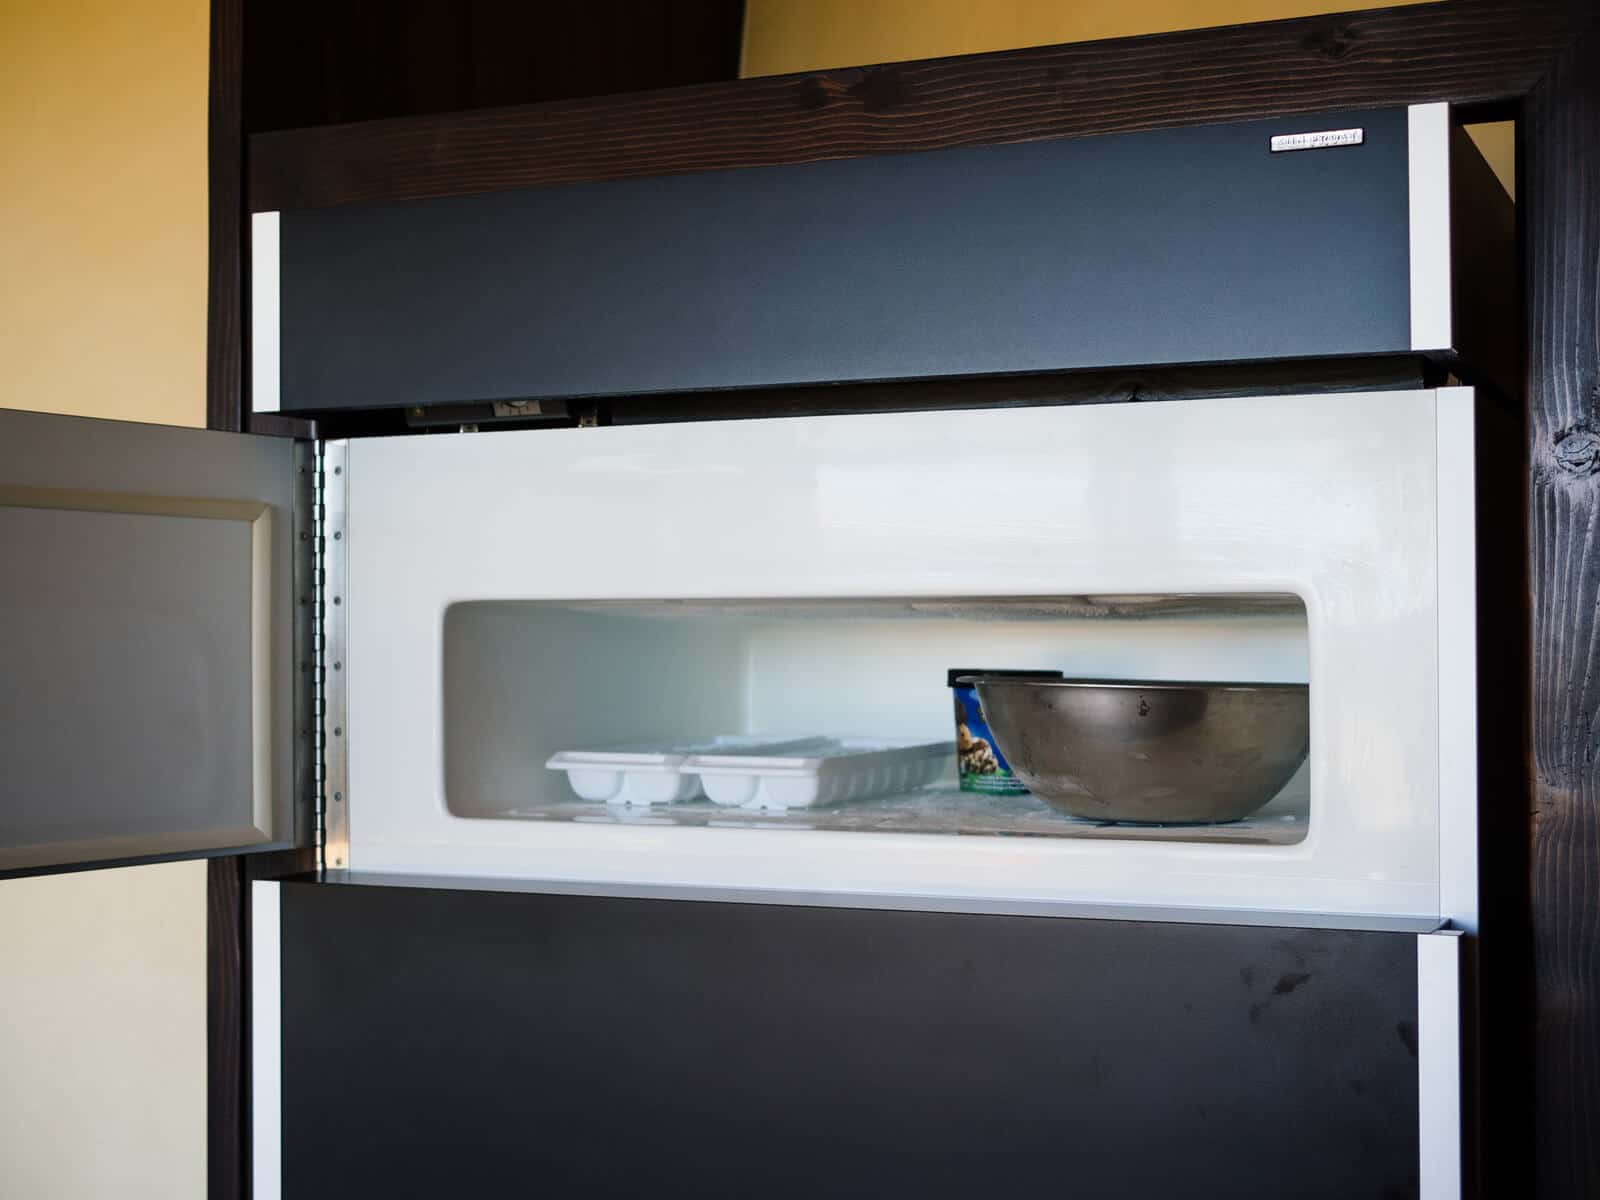 Solar-powered DC refrigerator and freezer